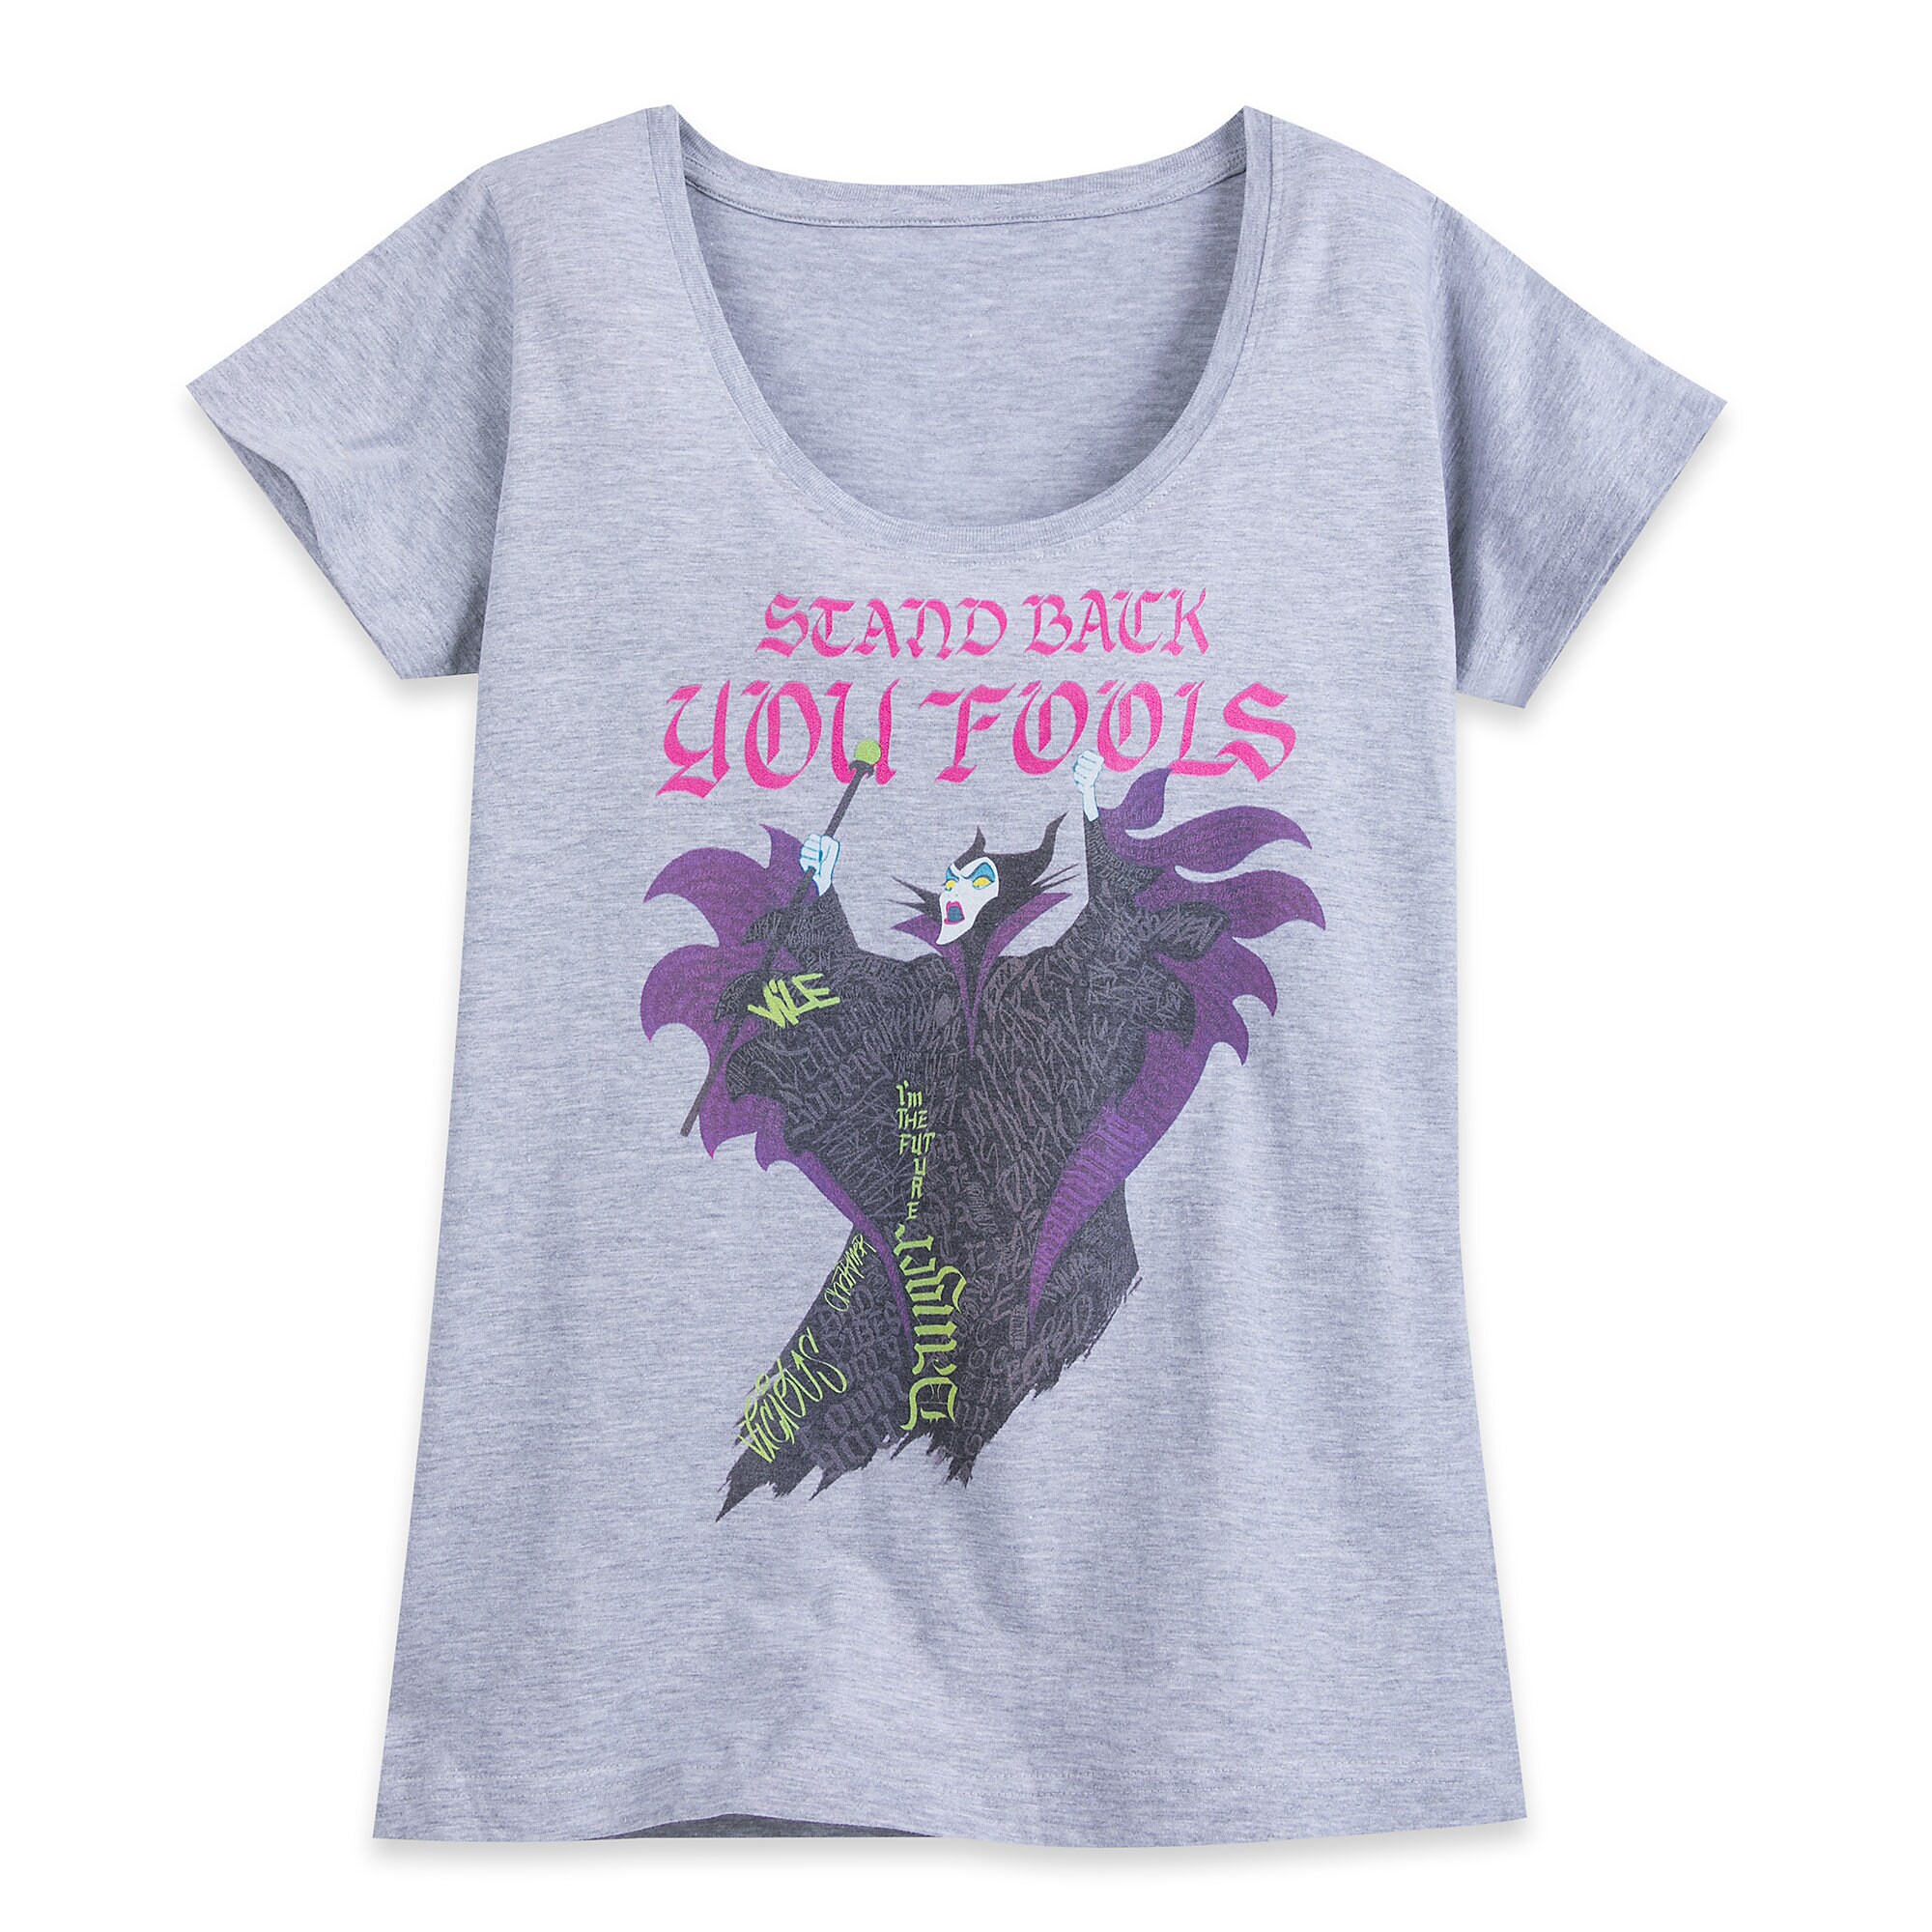 Maleficent T-Shirt for Women - Sleeping Beauty